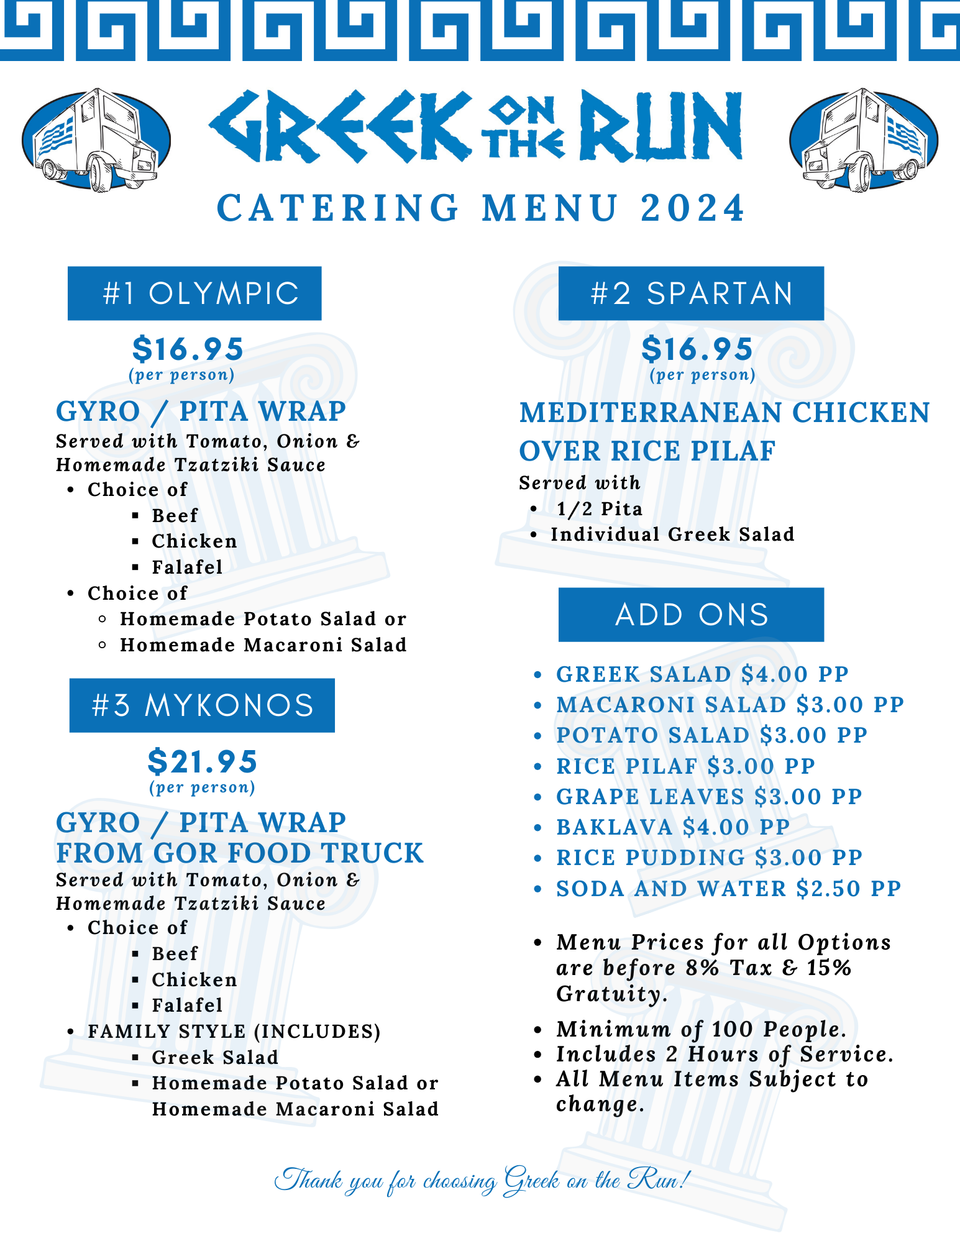 Gor catering menu 2024 (1)